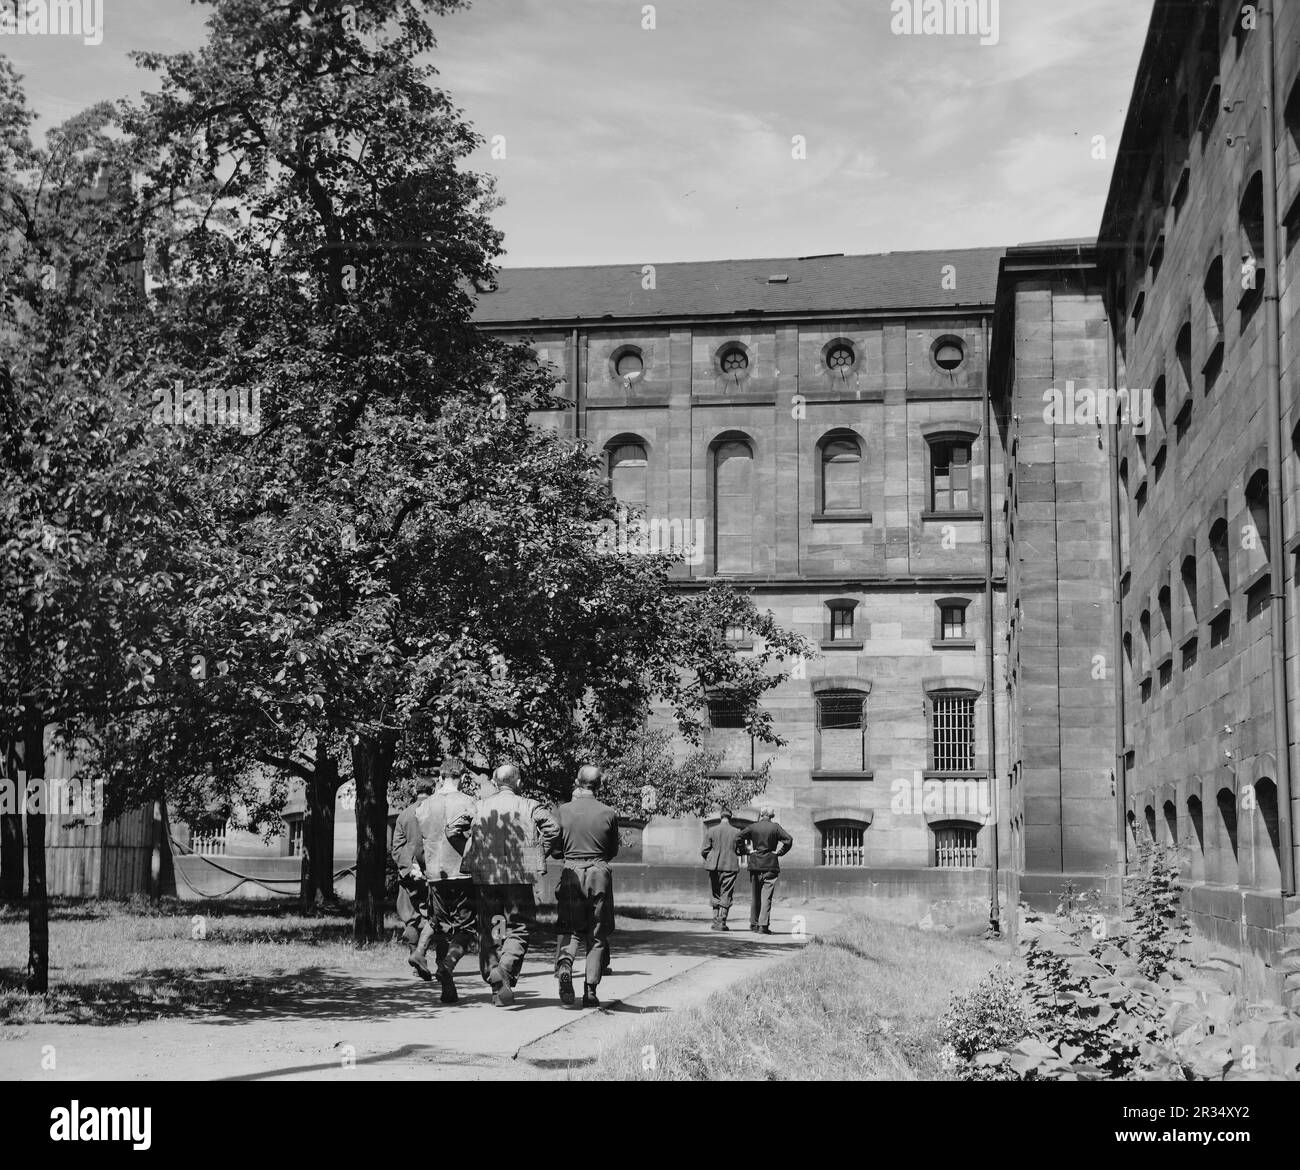 Das Gefängnis des Nürnberger Gerichtsgebäudes, in dem 1945 während der berühmten Nürnberger Gerichtsverfahren die Nazi-Kriegsverbrecher inhaftiert wurden. Stockfoto